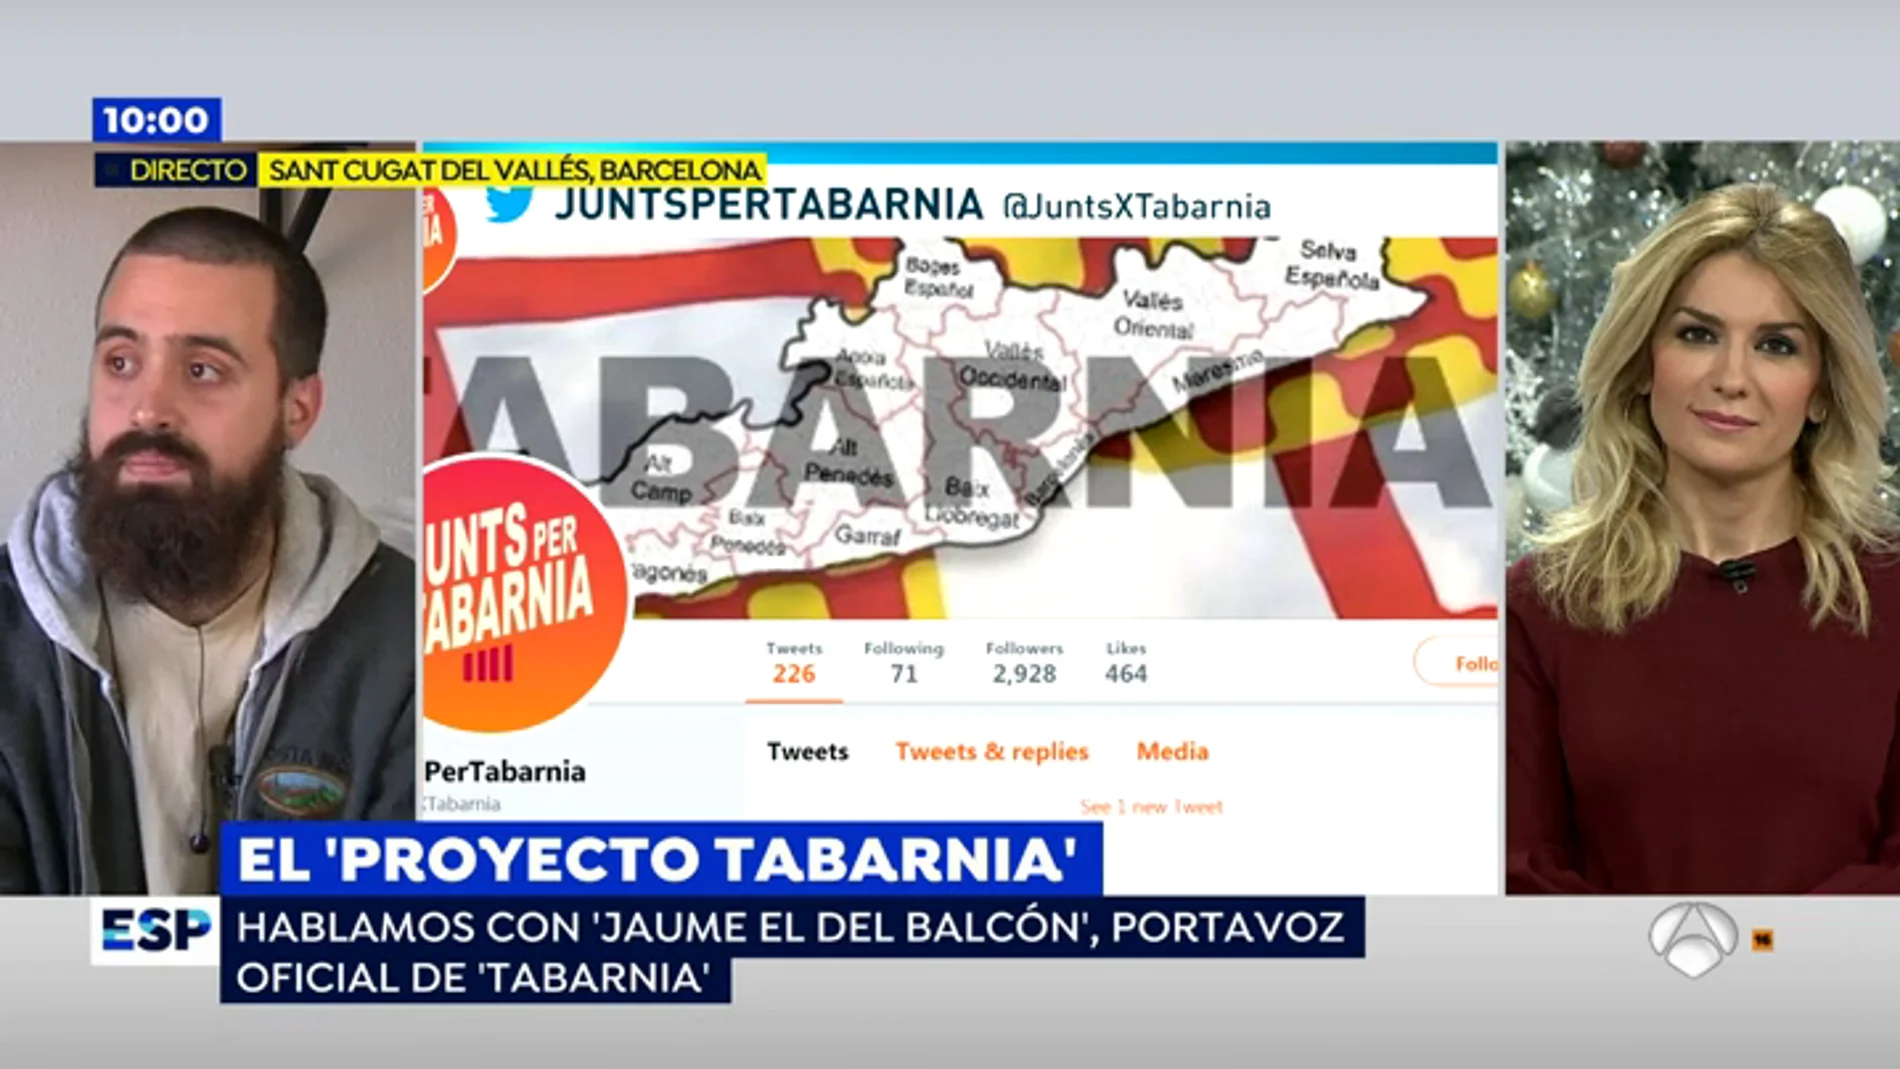 Jaume Vives, portavoz oficial de Tabarnia: "Está empezando a conseguir su objetivo: que los propios independentistas se desmonten sus argumentos"